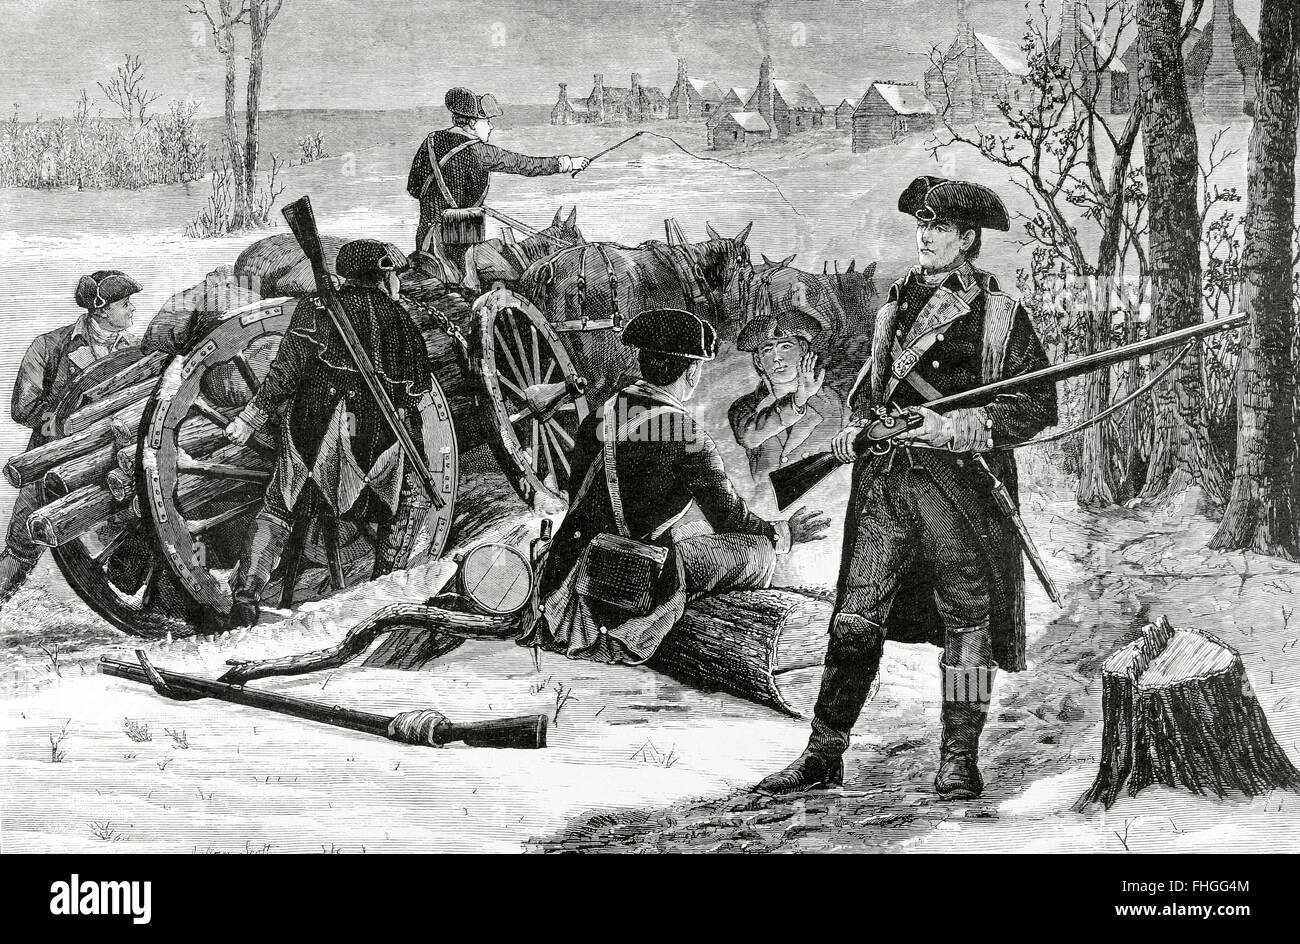 Amerikanischer Unabhängigkeitskrieg (1775-1783). Senke-Schmiede. Pennsylvania. Kontinentale Armee-Camp im Winter 1777-1778. Gravur. Stockfoto